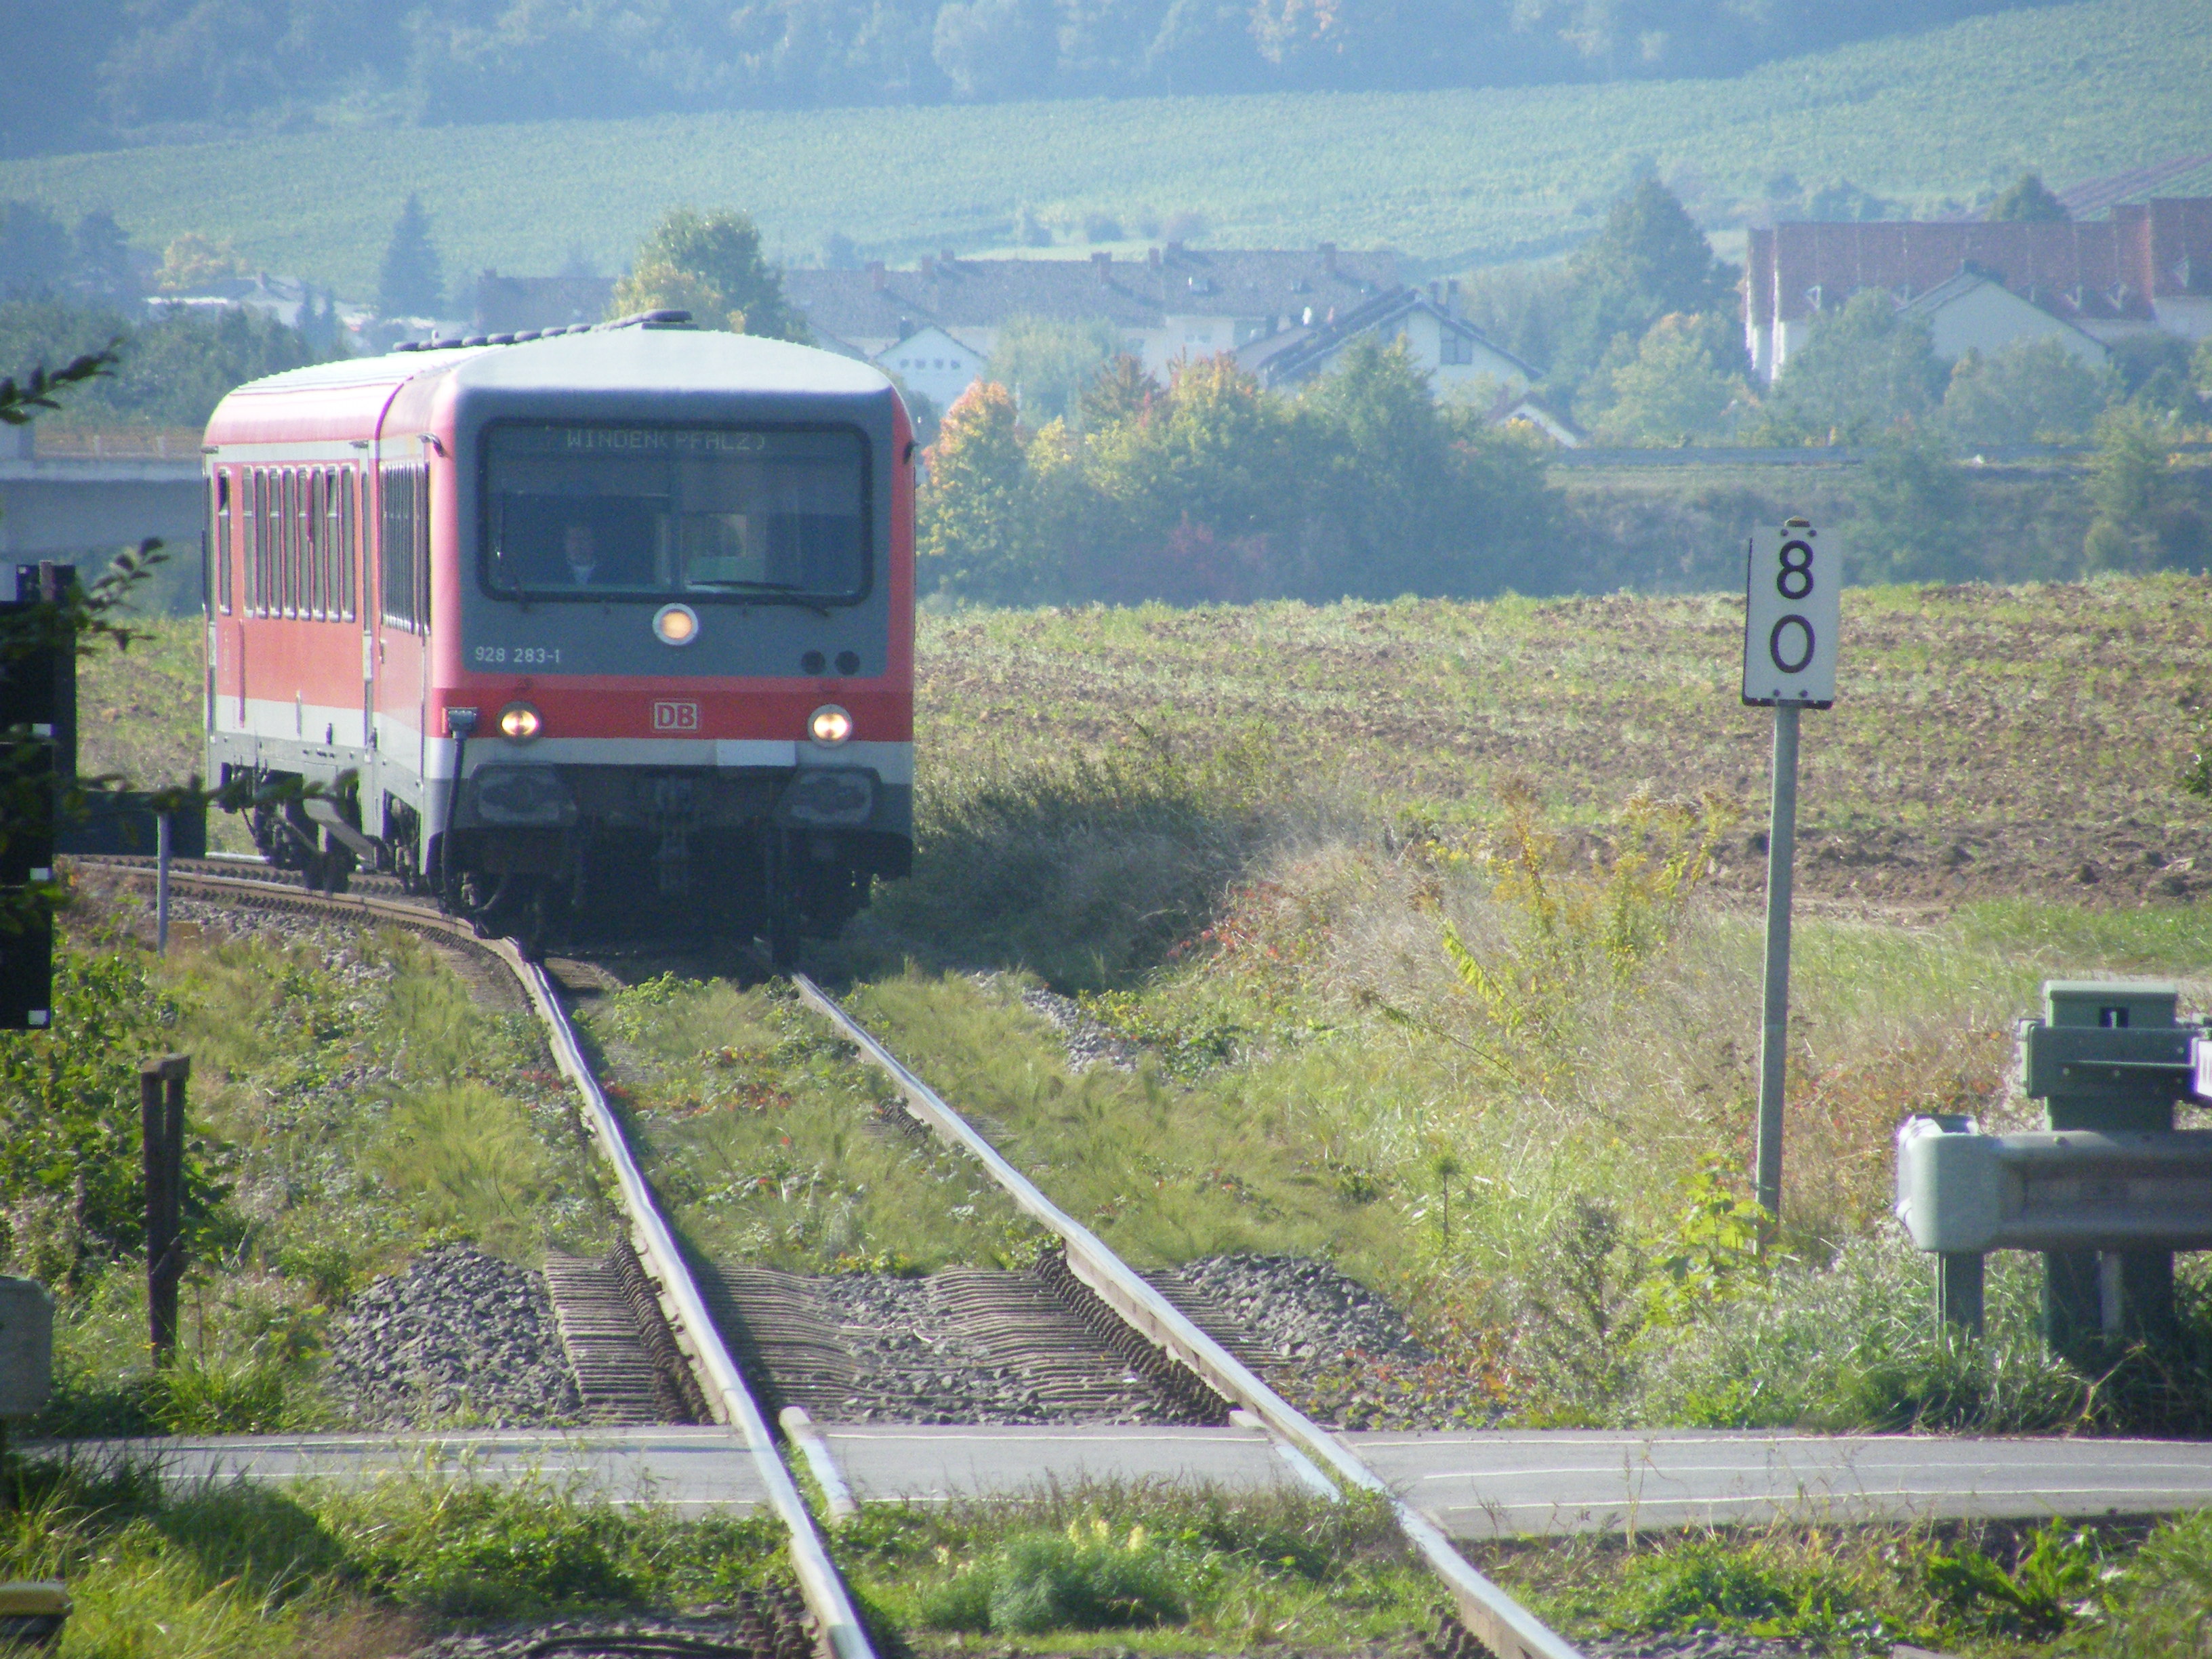 VT 628 auf der Kurbadlinie nahe Kapellen-Drusweiler.